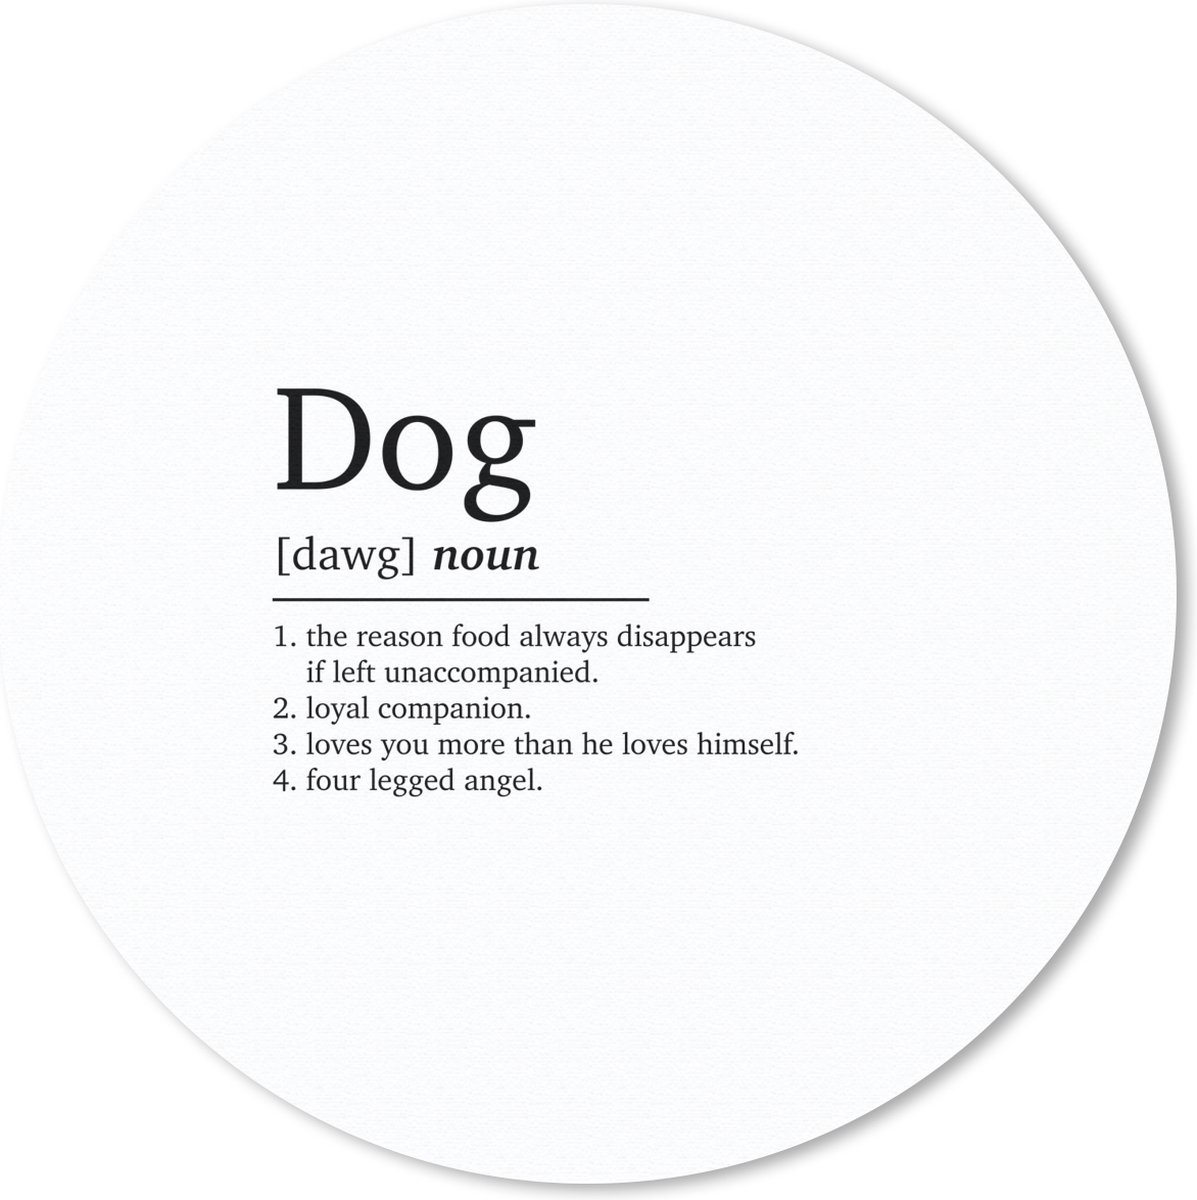 Muismat - Mousepad - Rond - Spreuken - Dog - Woordenboek - Hond definitie - Dieren - Quotes - 20x20 cm - Ronde muismat